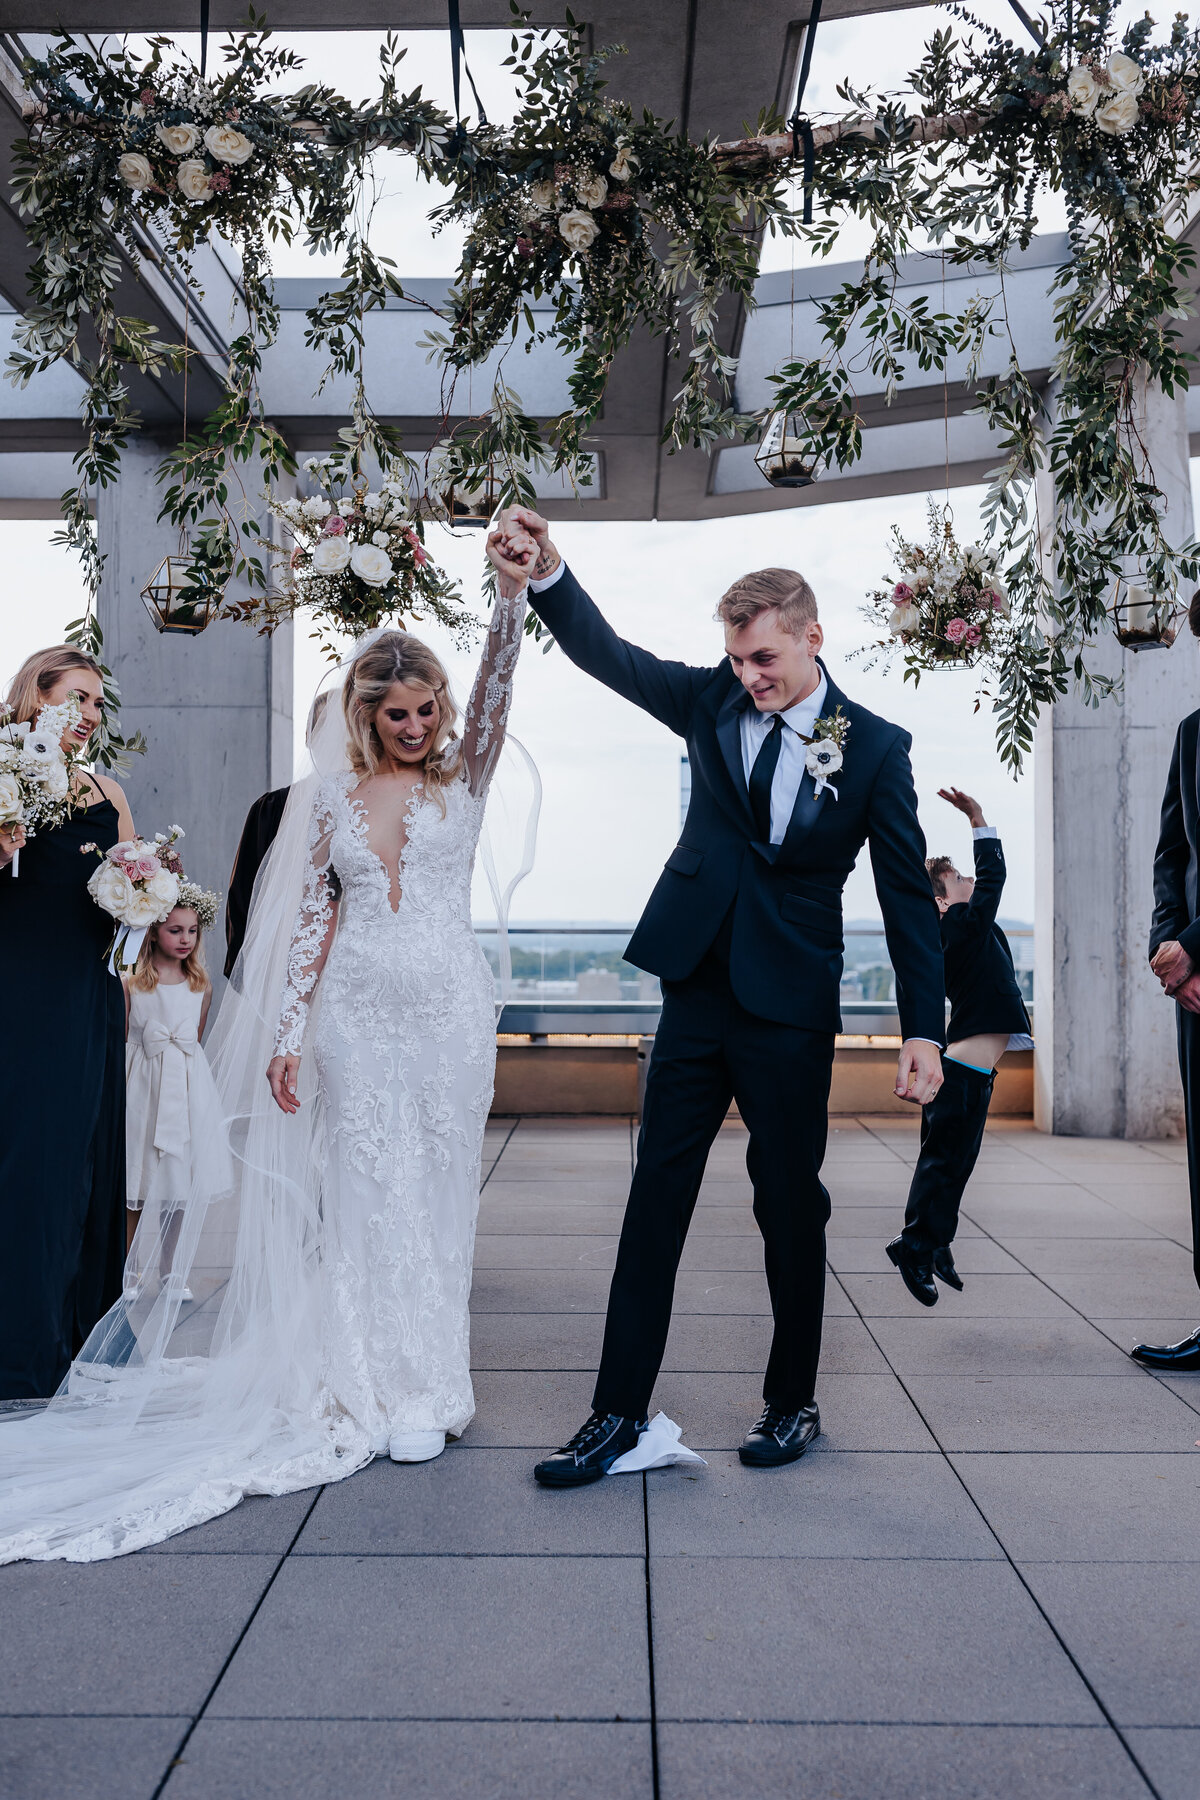 Nashville wedding photographer captures bride and groom celebrating after recent marriage